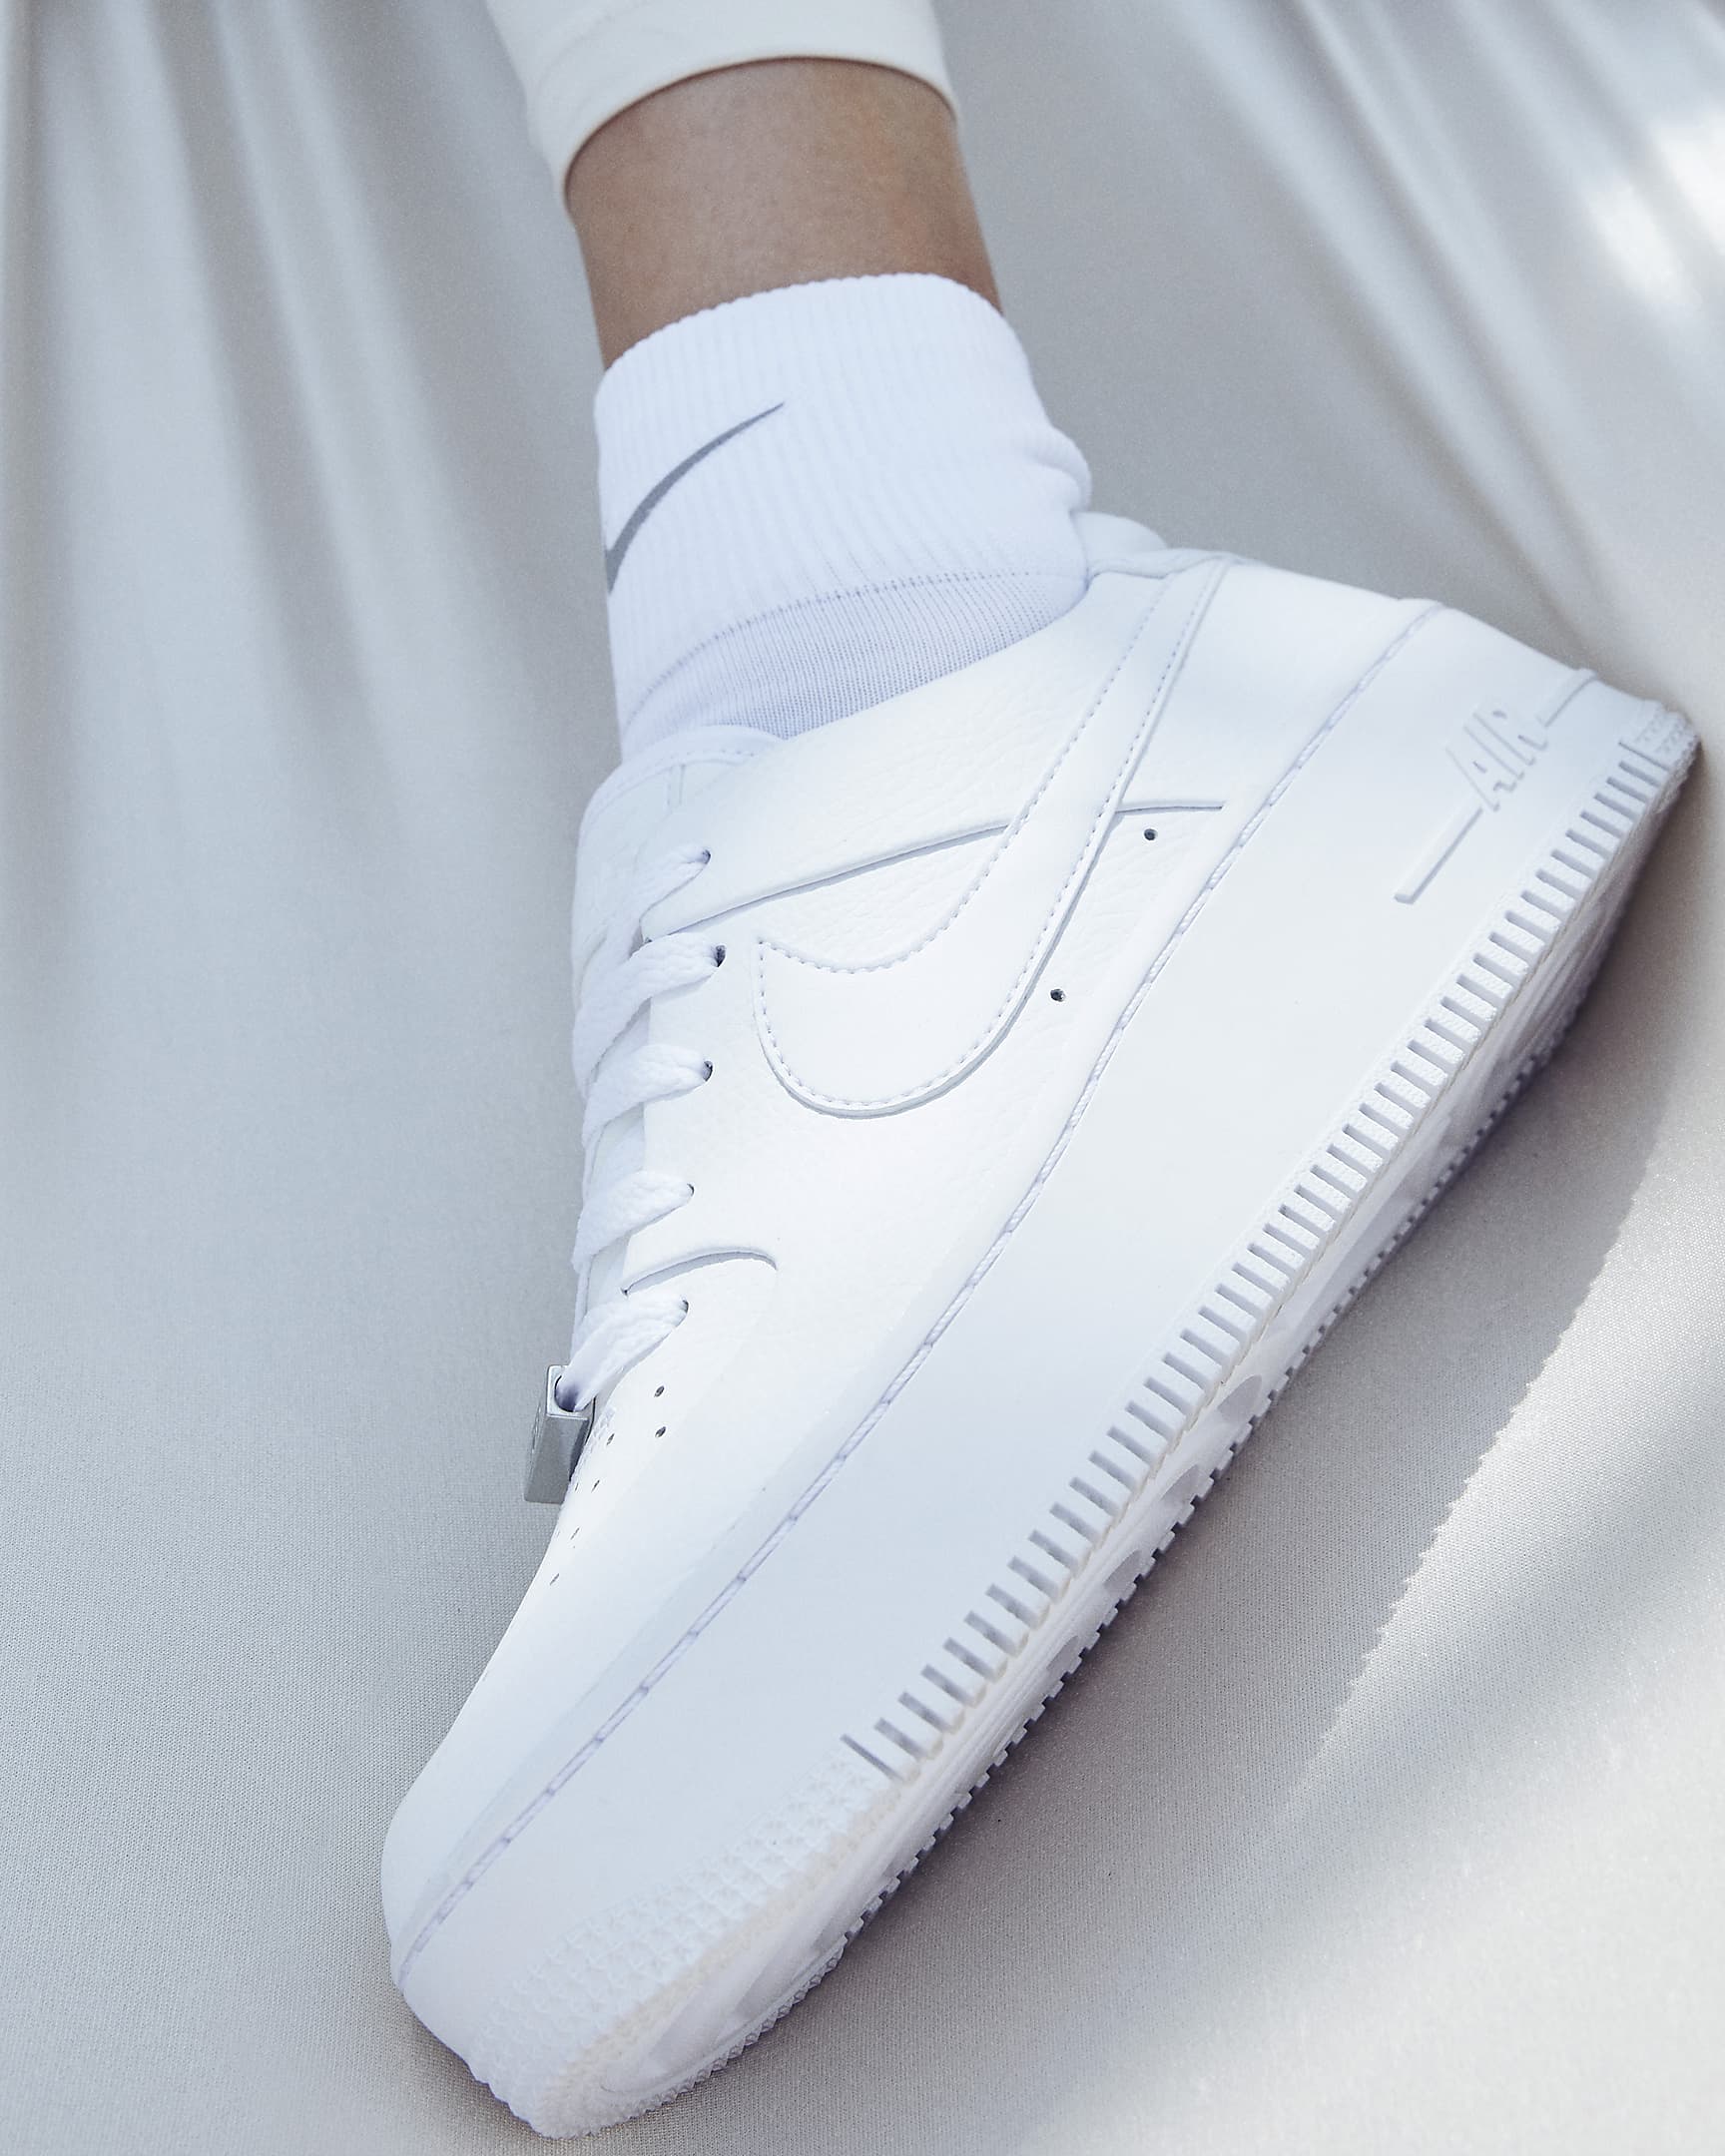 Nike Air Force 1 Sage Low Damenschuh - Weiß/Weiß/Weiß